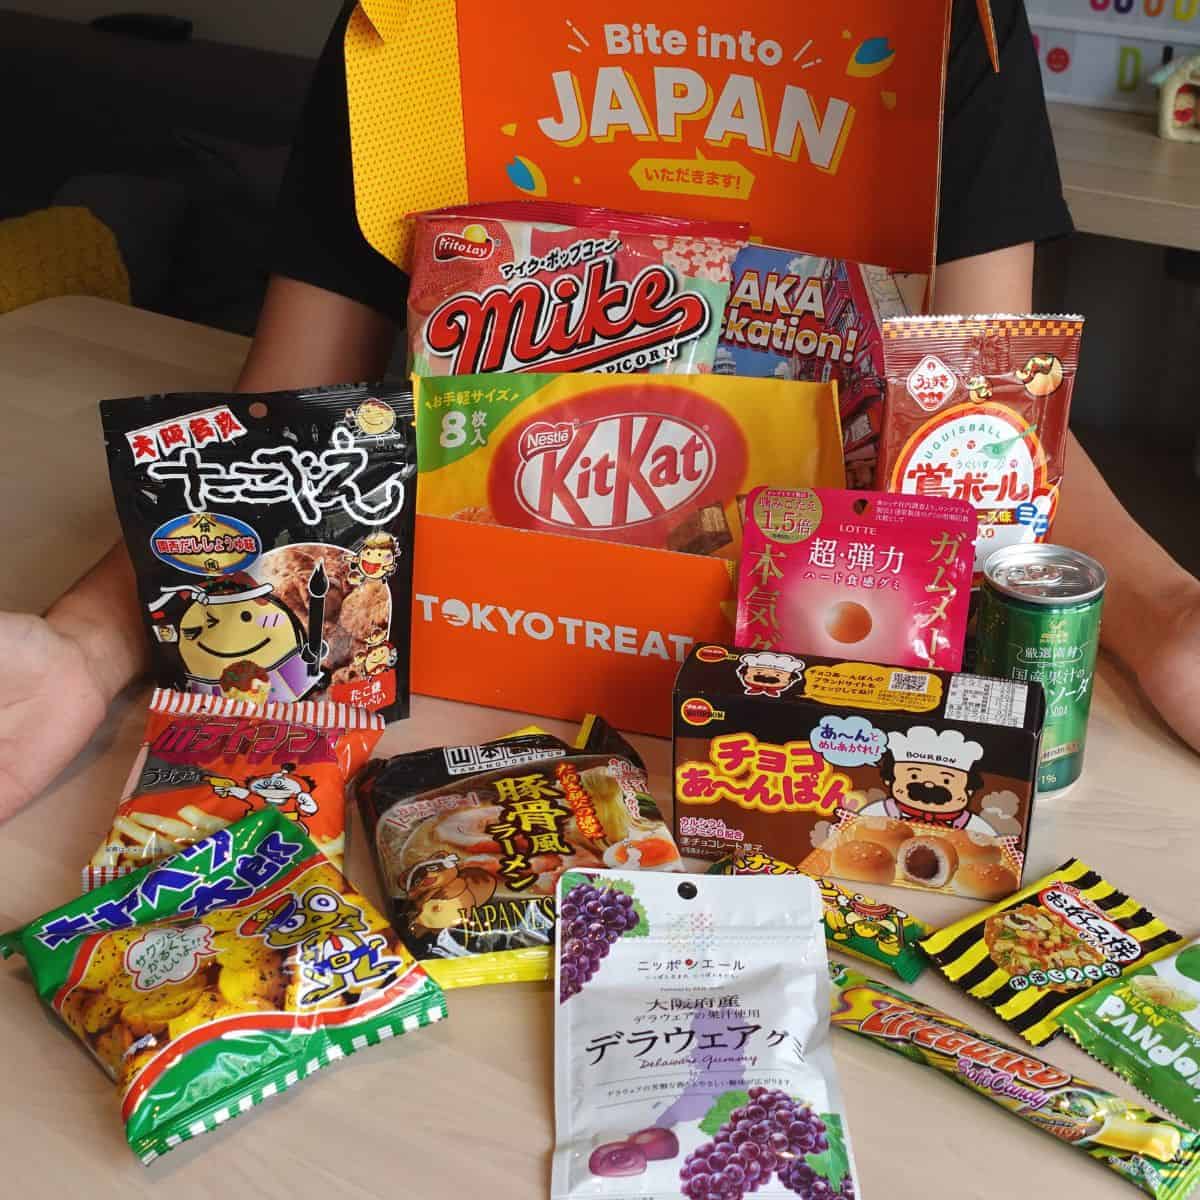 Tokyo Treat snack box Osaka edition